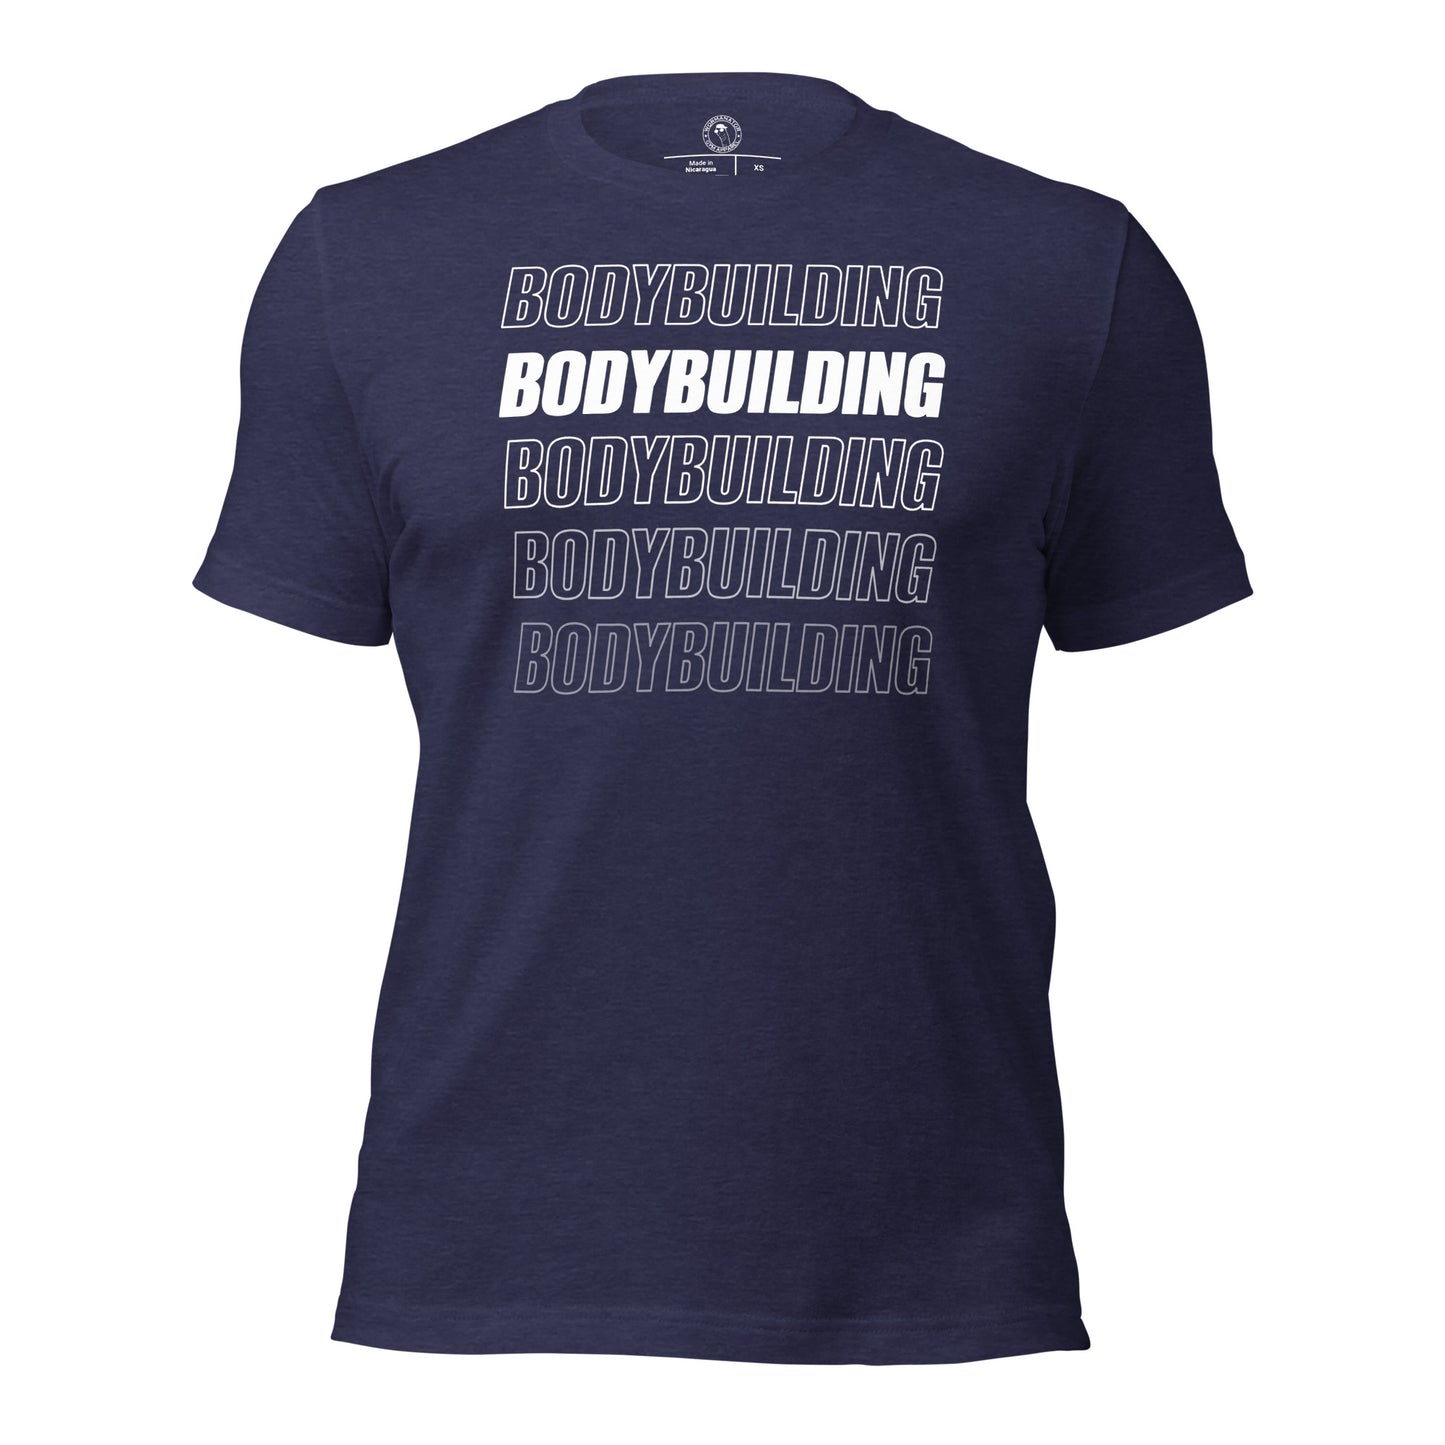 Bodybuilding Shirt in Heather Midnight Navy